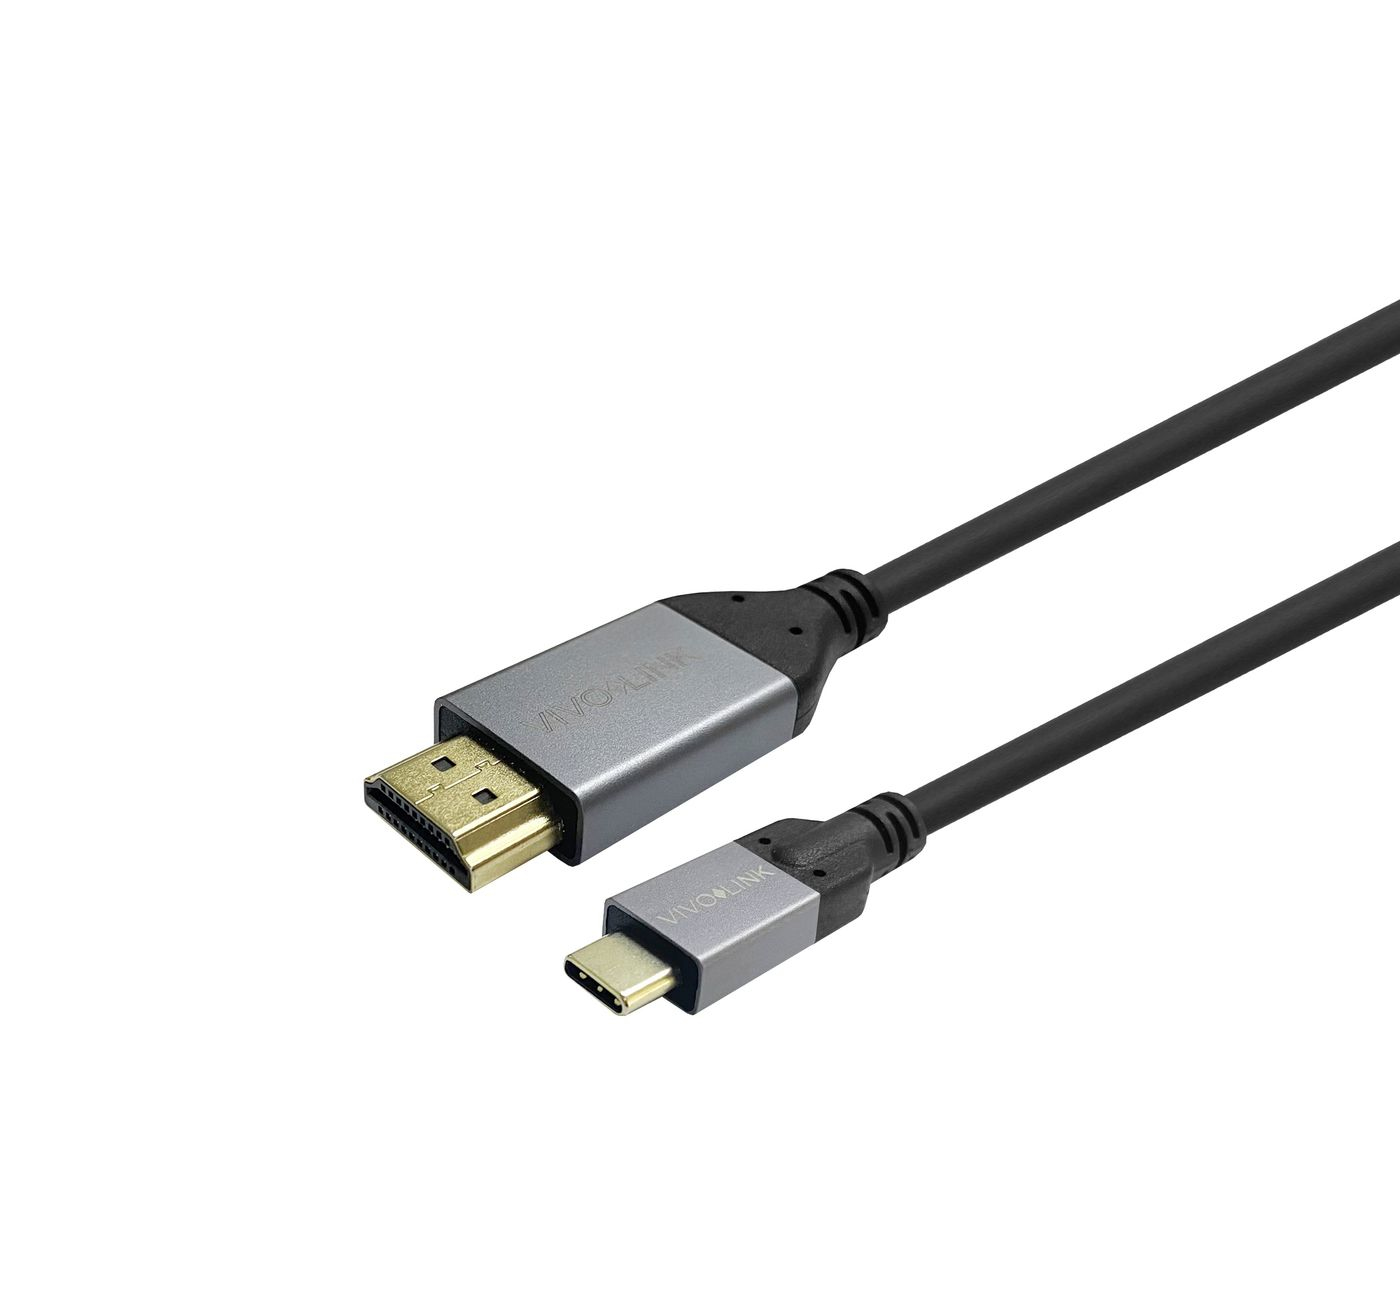 Photos - Cable (video, audio, USB) Vivolink PROUSBCHDMIMM3 USB cable 3 m USB 3.2 Gen 1  USB C (3.1 Gen 1)